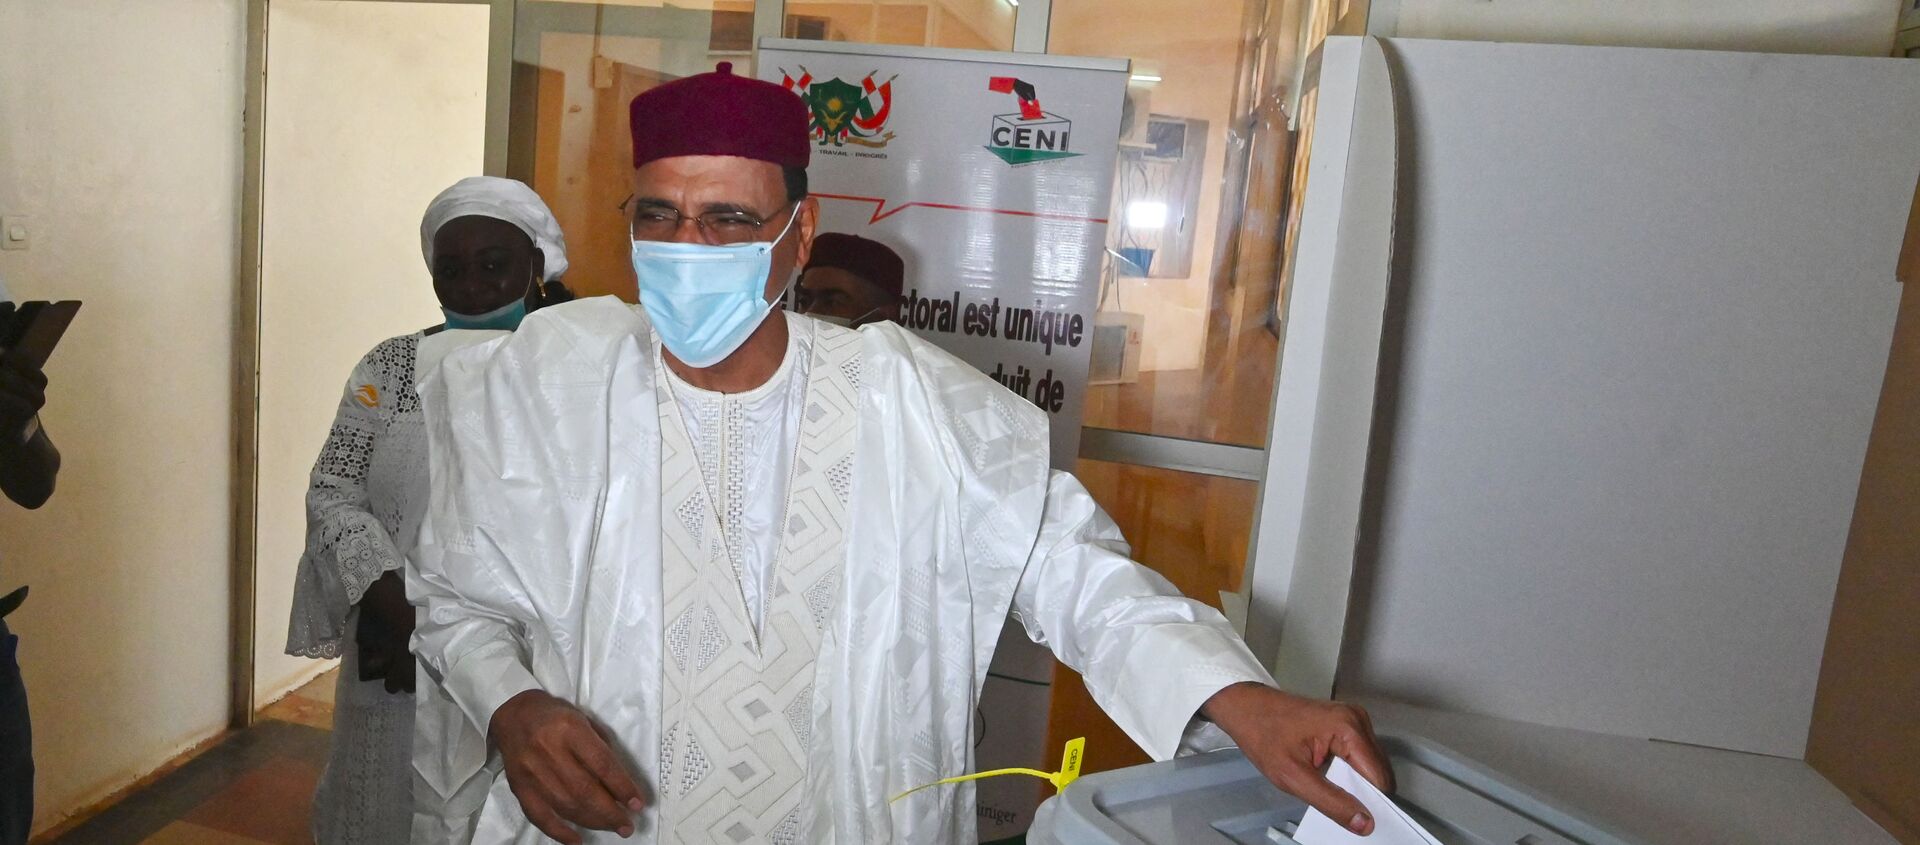 Le candidat à la présidentielle nigérienne Mohamed Bazoum en train de voter - Sputnik Afrique, 1920, 09.02.2021